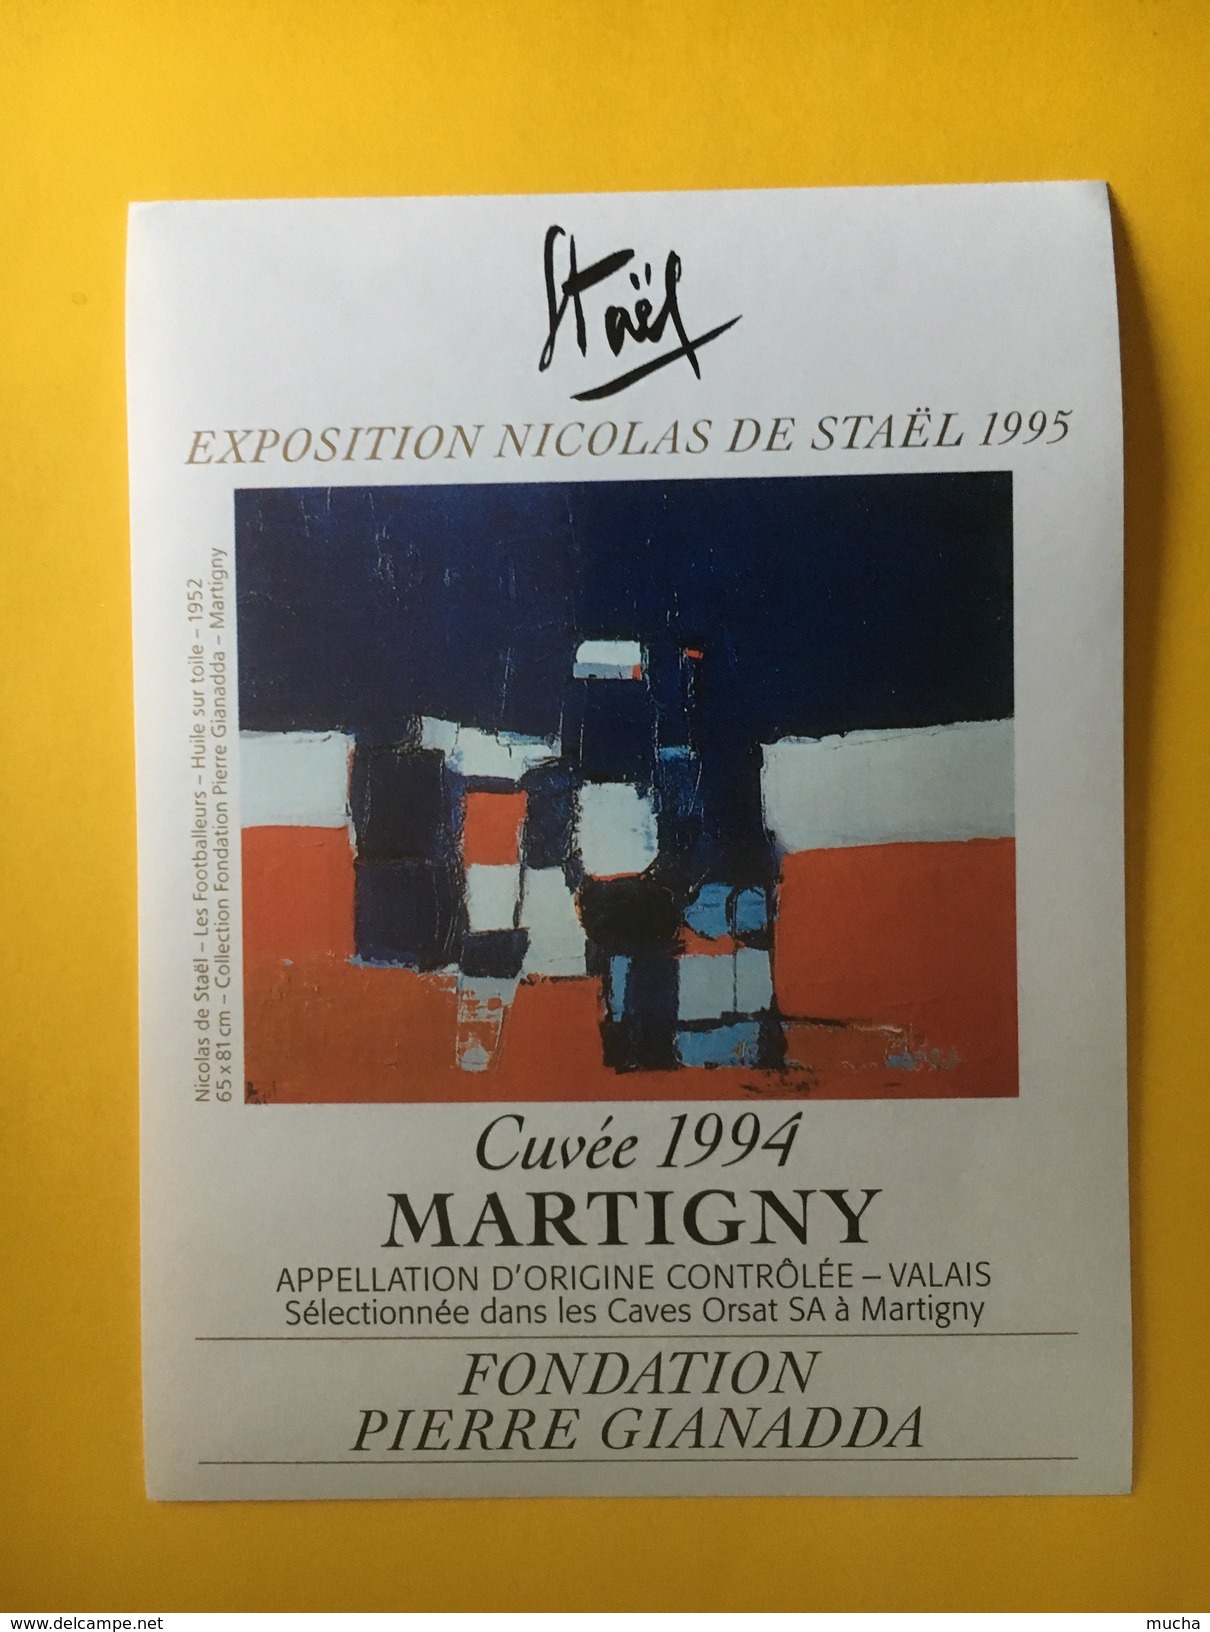 5932 - Nicolas De Staël Exposition 1995  Fondation Pierre Gianadda Martigny Suisse - Arte